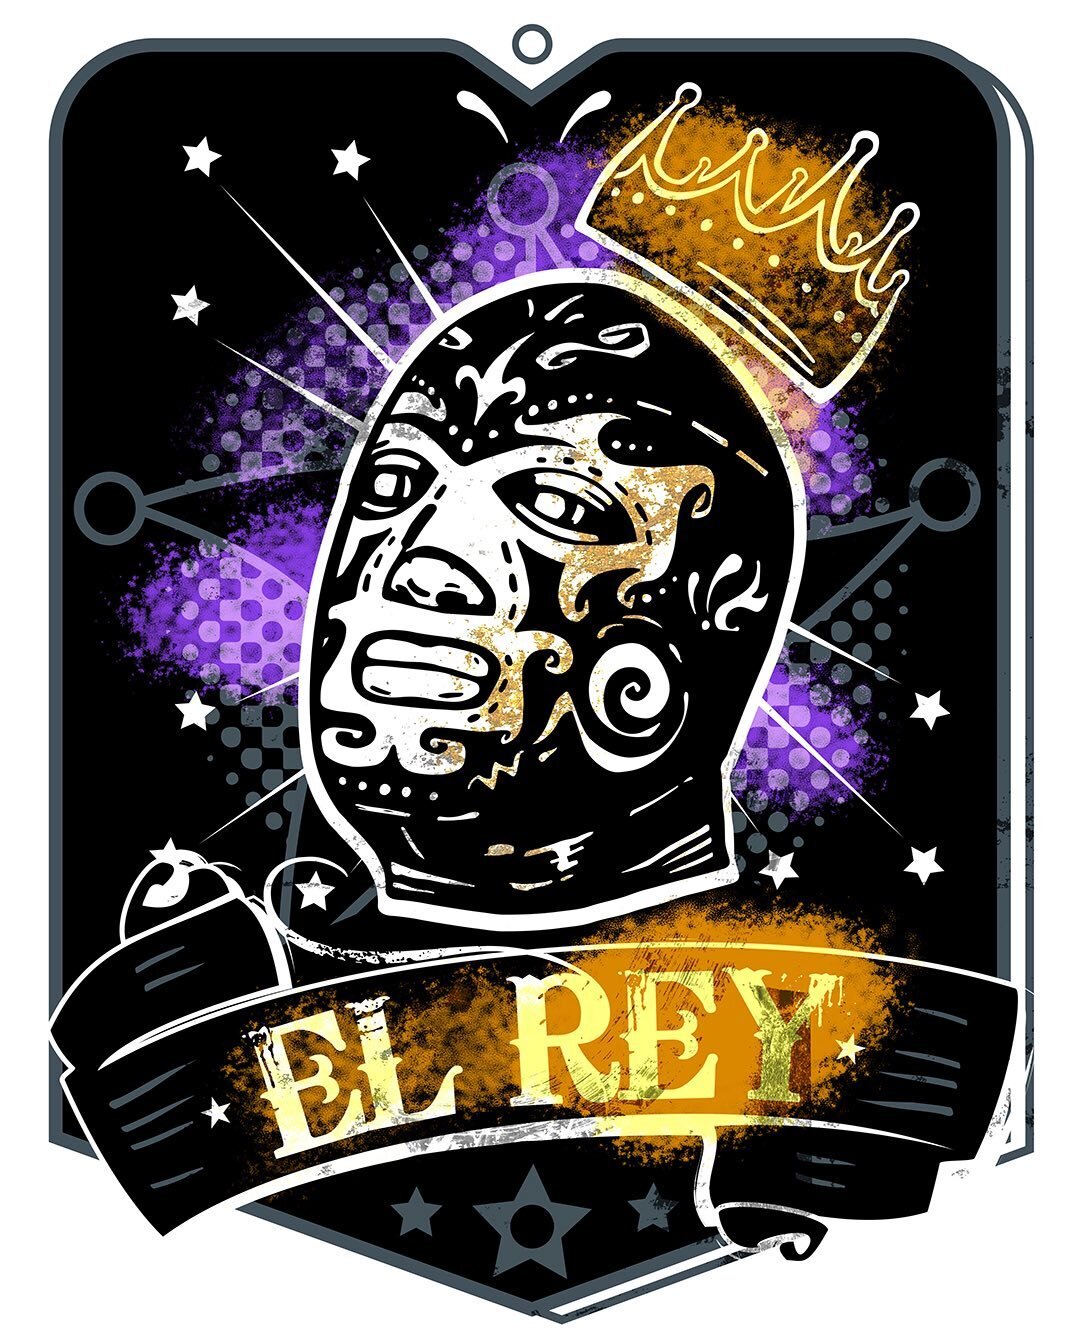 El Rey T-shirt design #luchador #lucha #digital art #mexican culture #latino